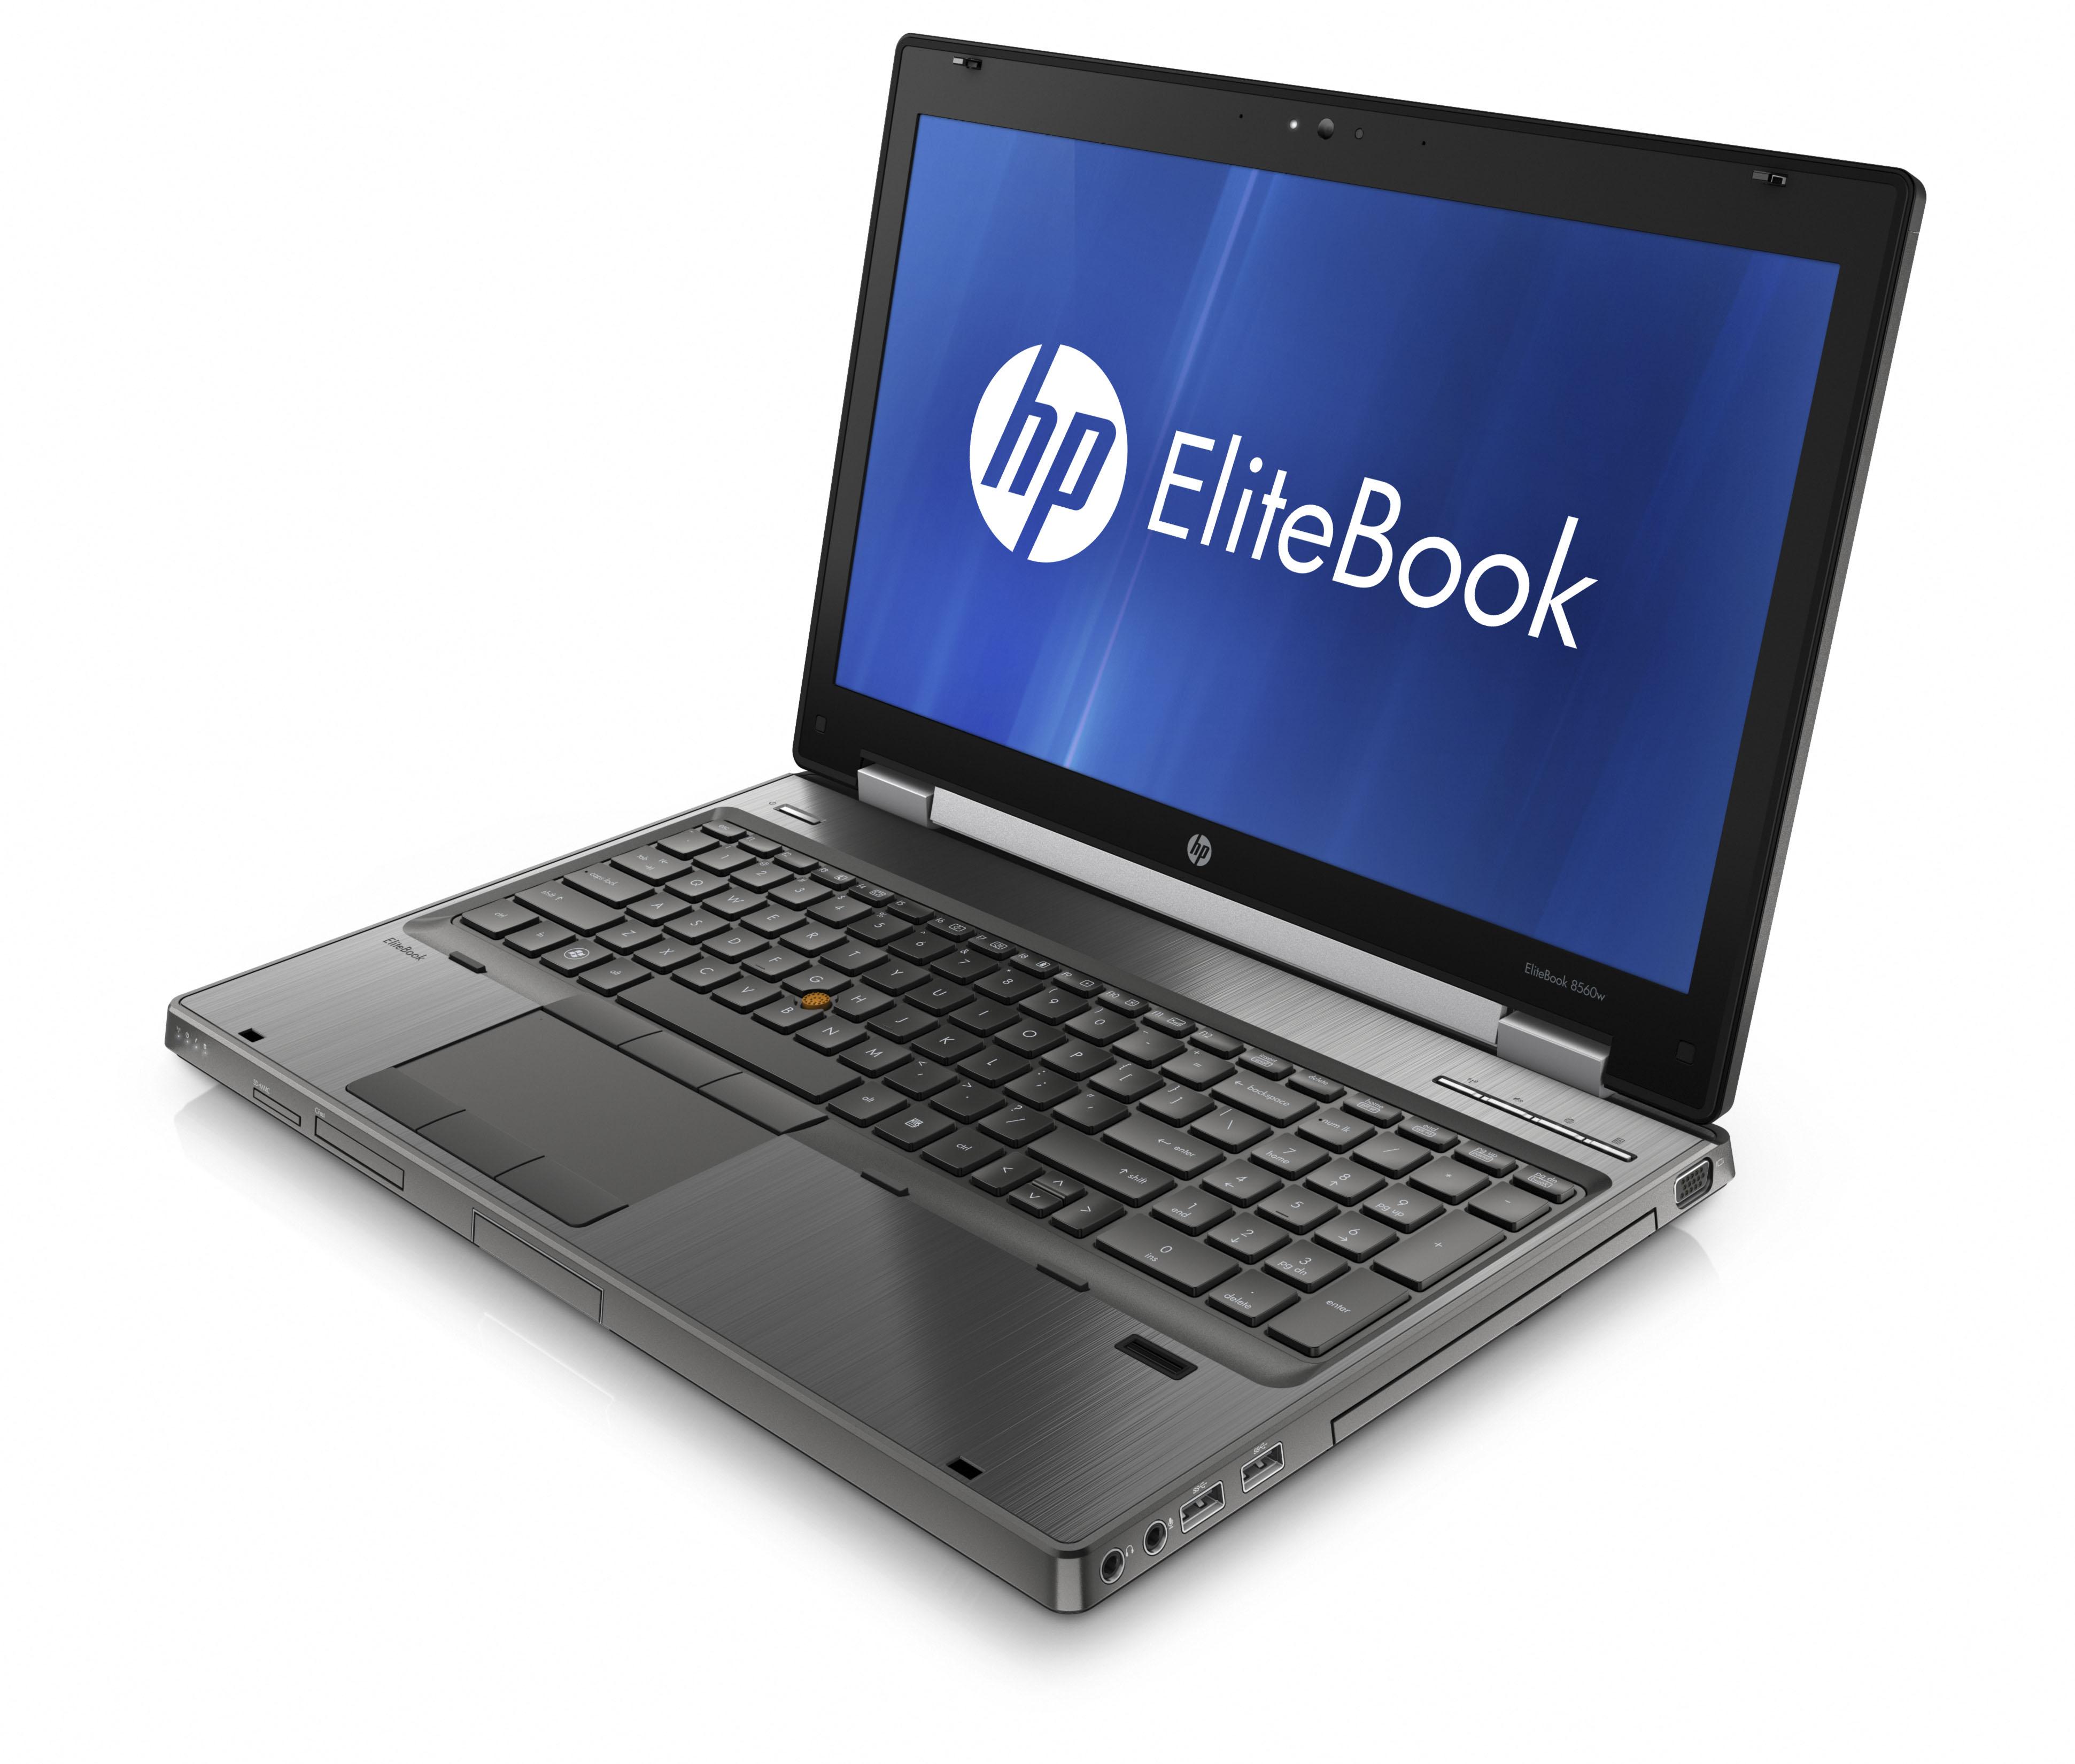 HP Elitebook 8560W i7-2620M 2x2,70GHz 8GB 180GB SSD Quadro 1000M DVD B-Ware